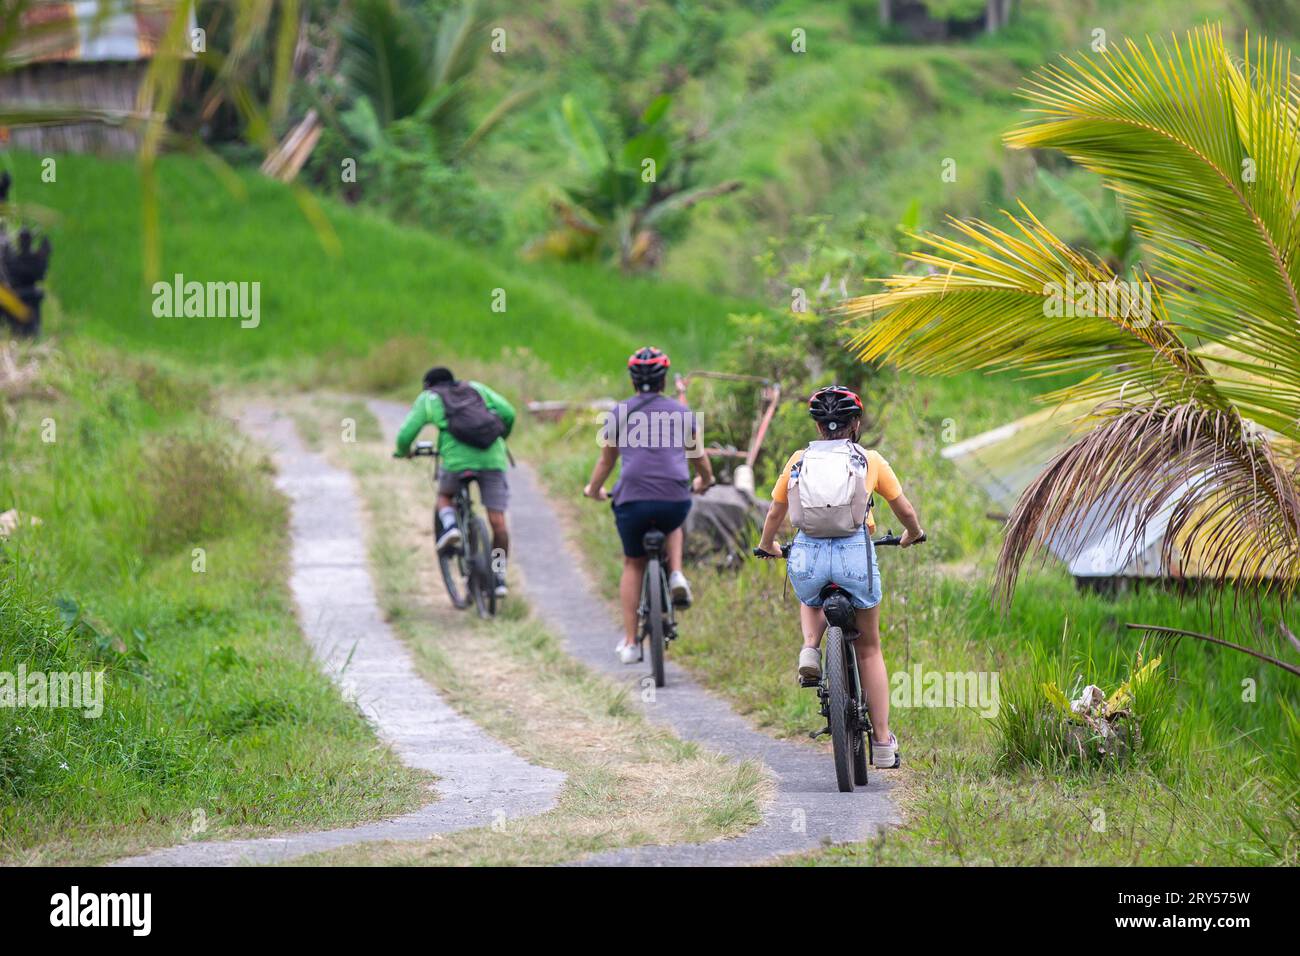 Un groupe de personnes faisant du vélo sur un sentier sur une île exotique Banque D'Images